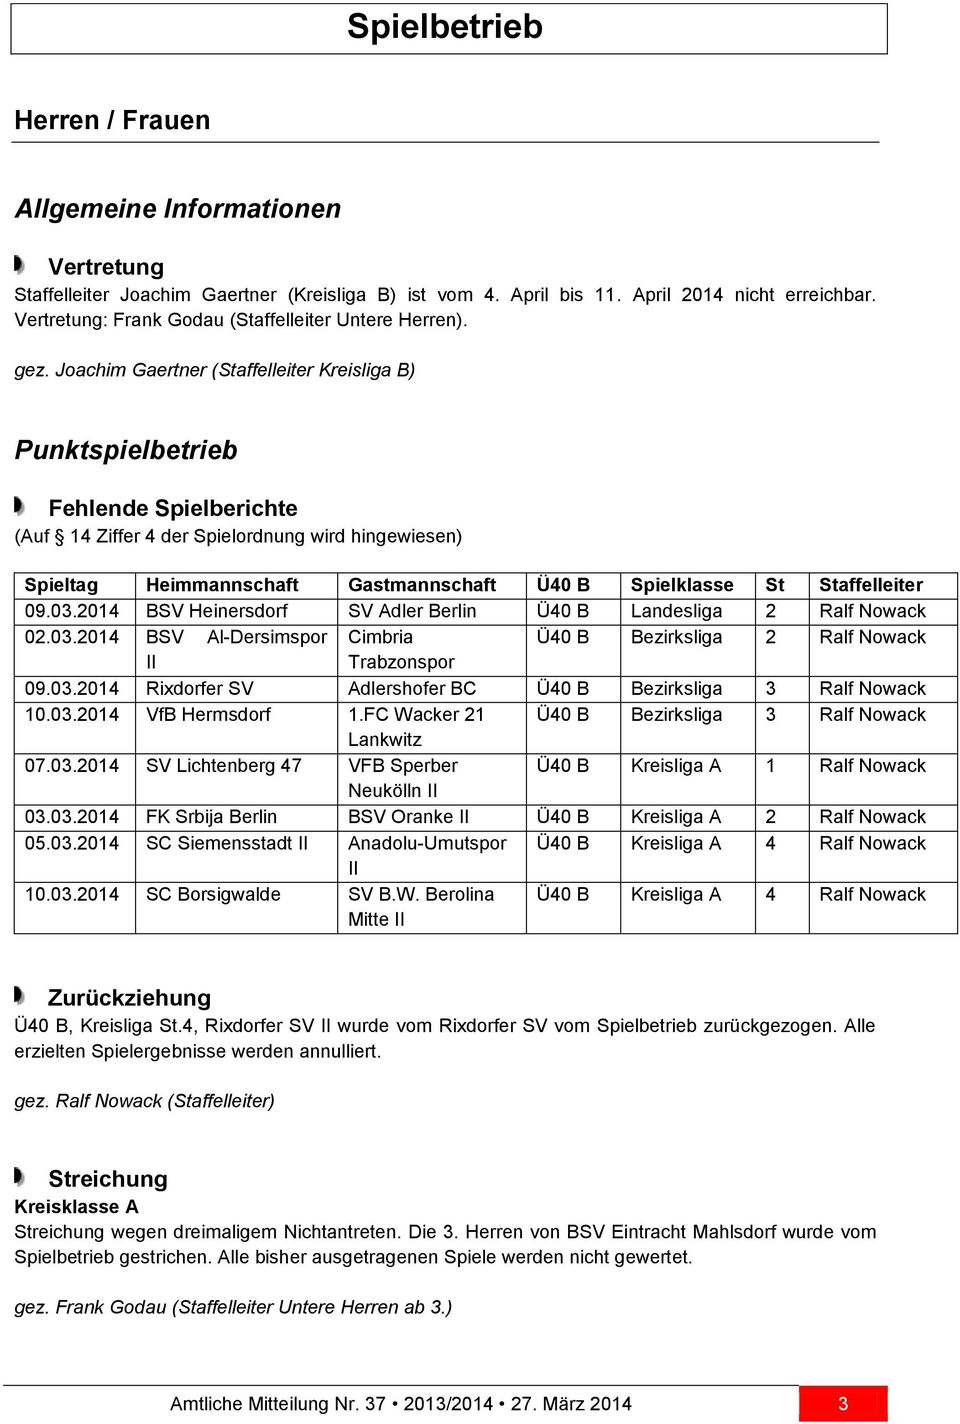 Joachim Gaertner (Staffelleiter Kreisliga B) Punktspielbetrieb Fehlende Spielberichte (Auf 14 Ziffer 4 der Spielordnung wird hingewiesen) Spieltag Heimmannschaft Gastmannschaft Ü40 B Spielklasse St